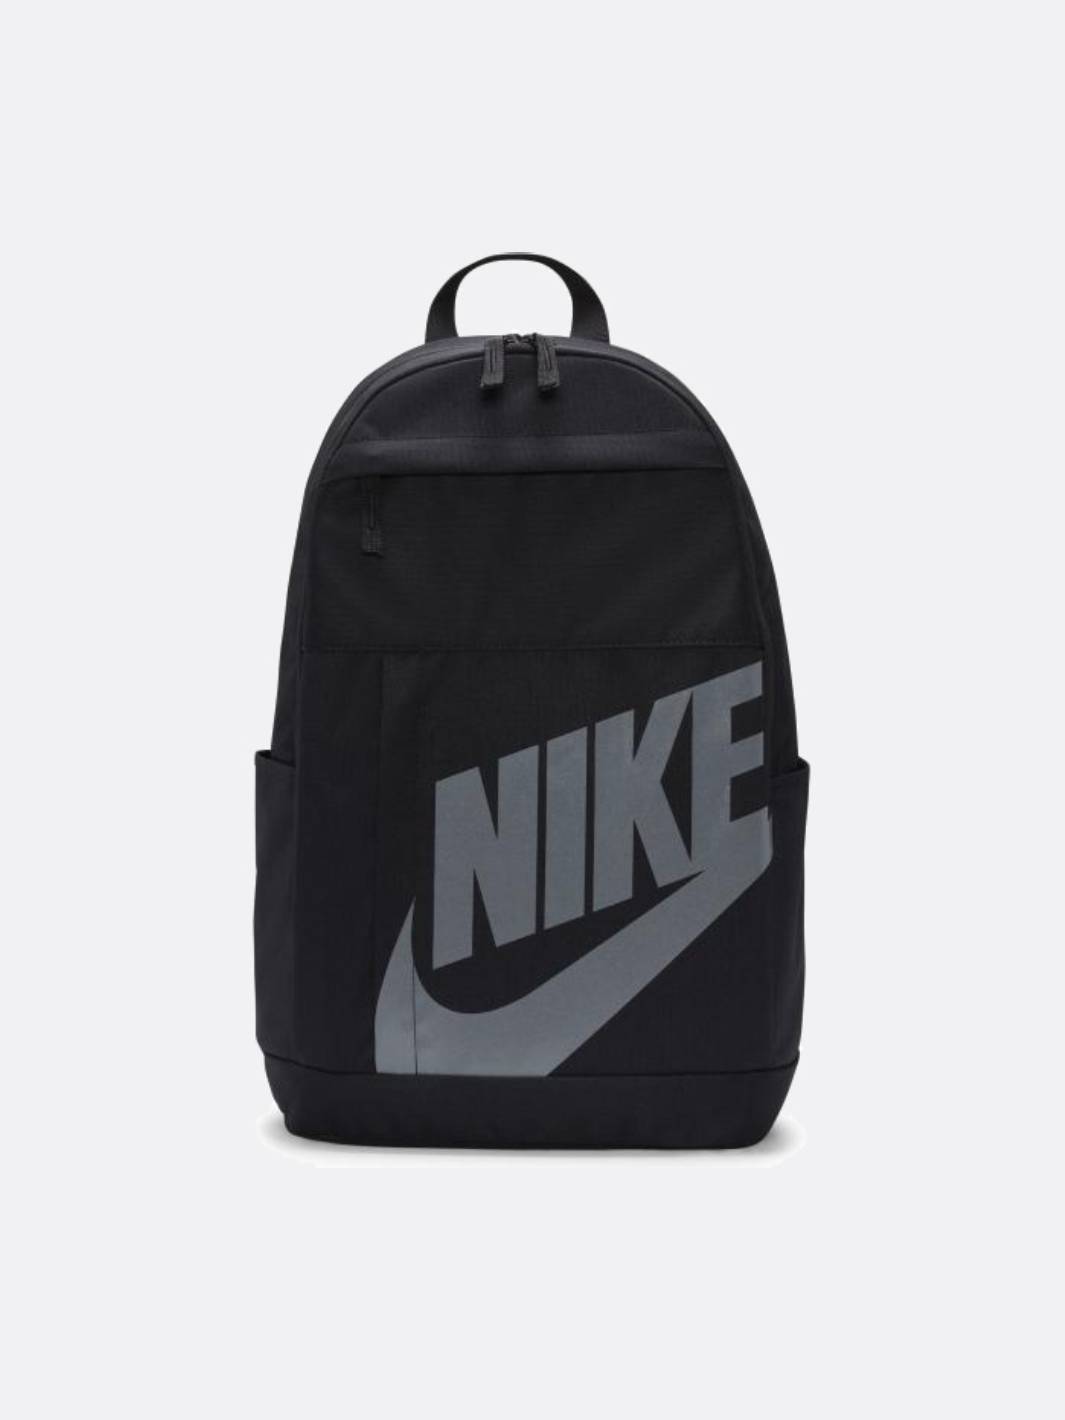 Uitbreiden Azijn halfrond Nike - Accessories - Elemental Backpack - Black/Reflective - Nohble